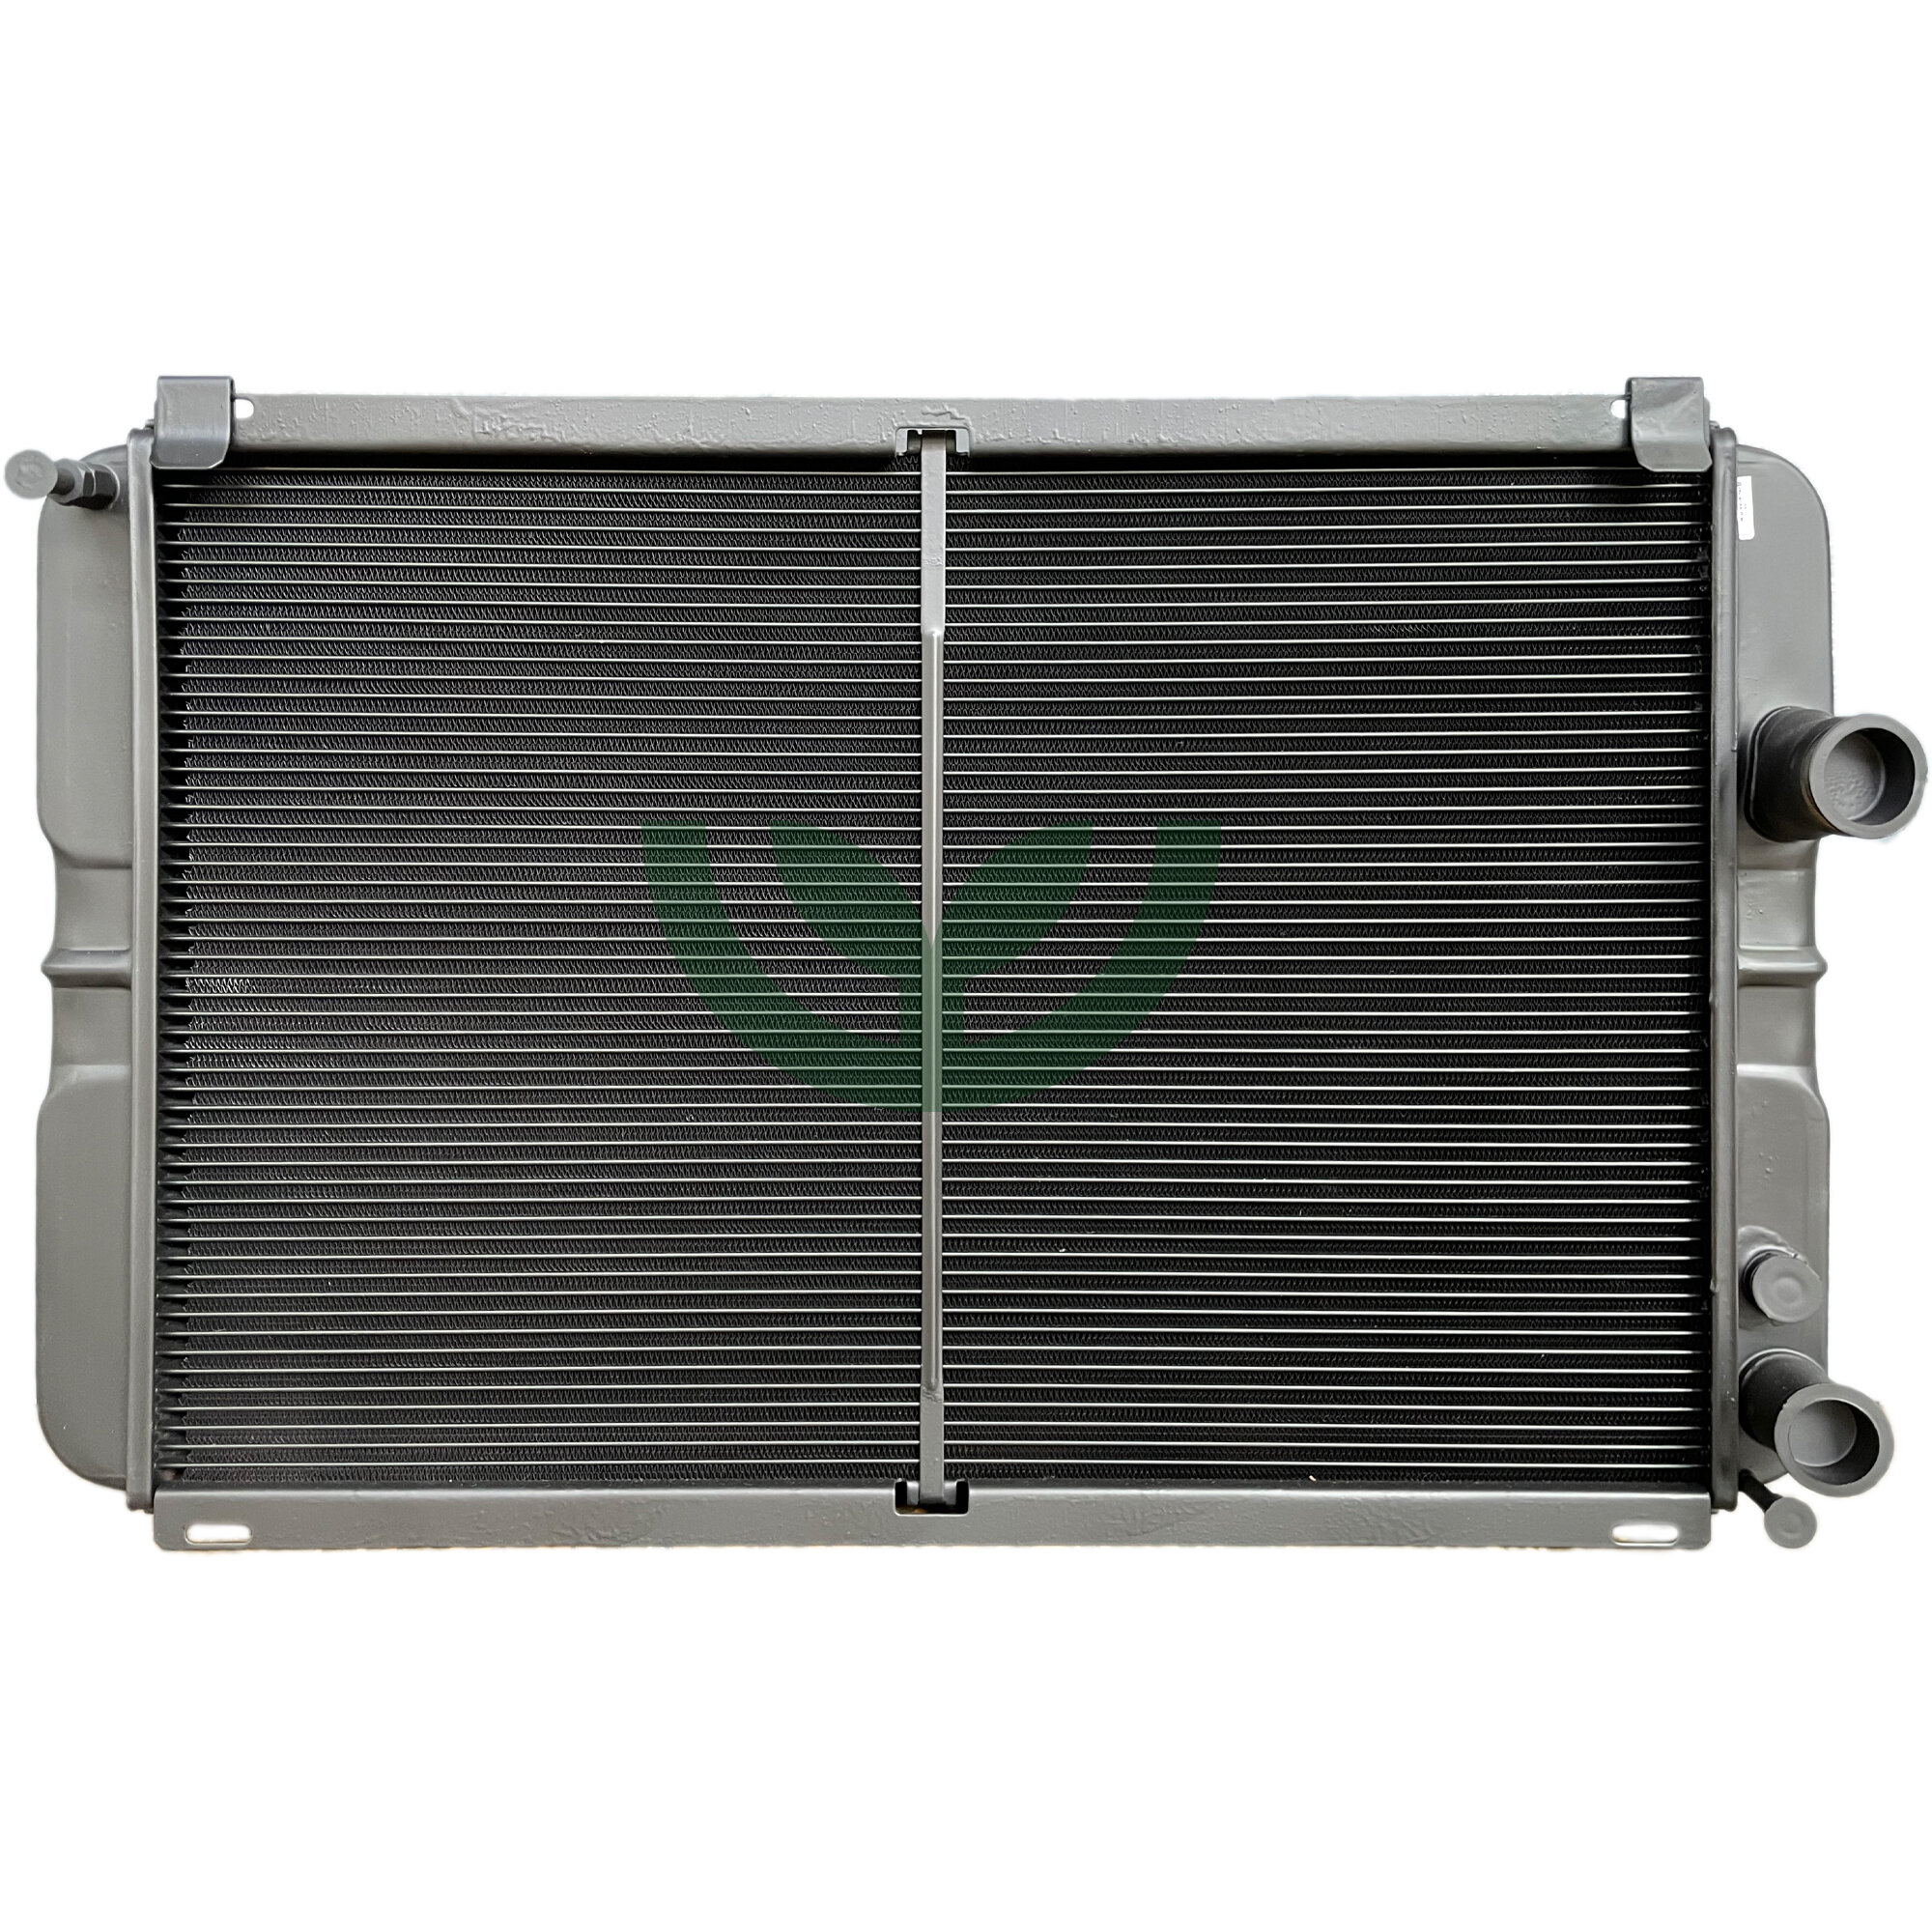 Радиатор охлаждения УАЗ Патриот 3163 под кондиционер медный 2-х рядный Оренбургский радиатор арт. 3163-1301010-30